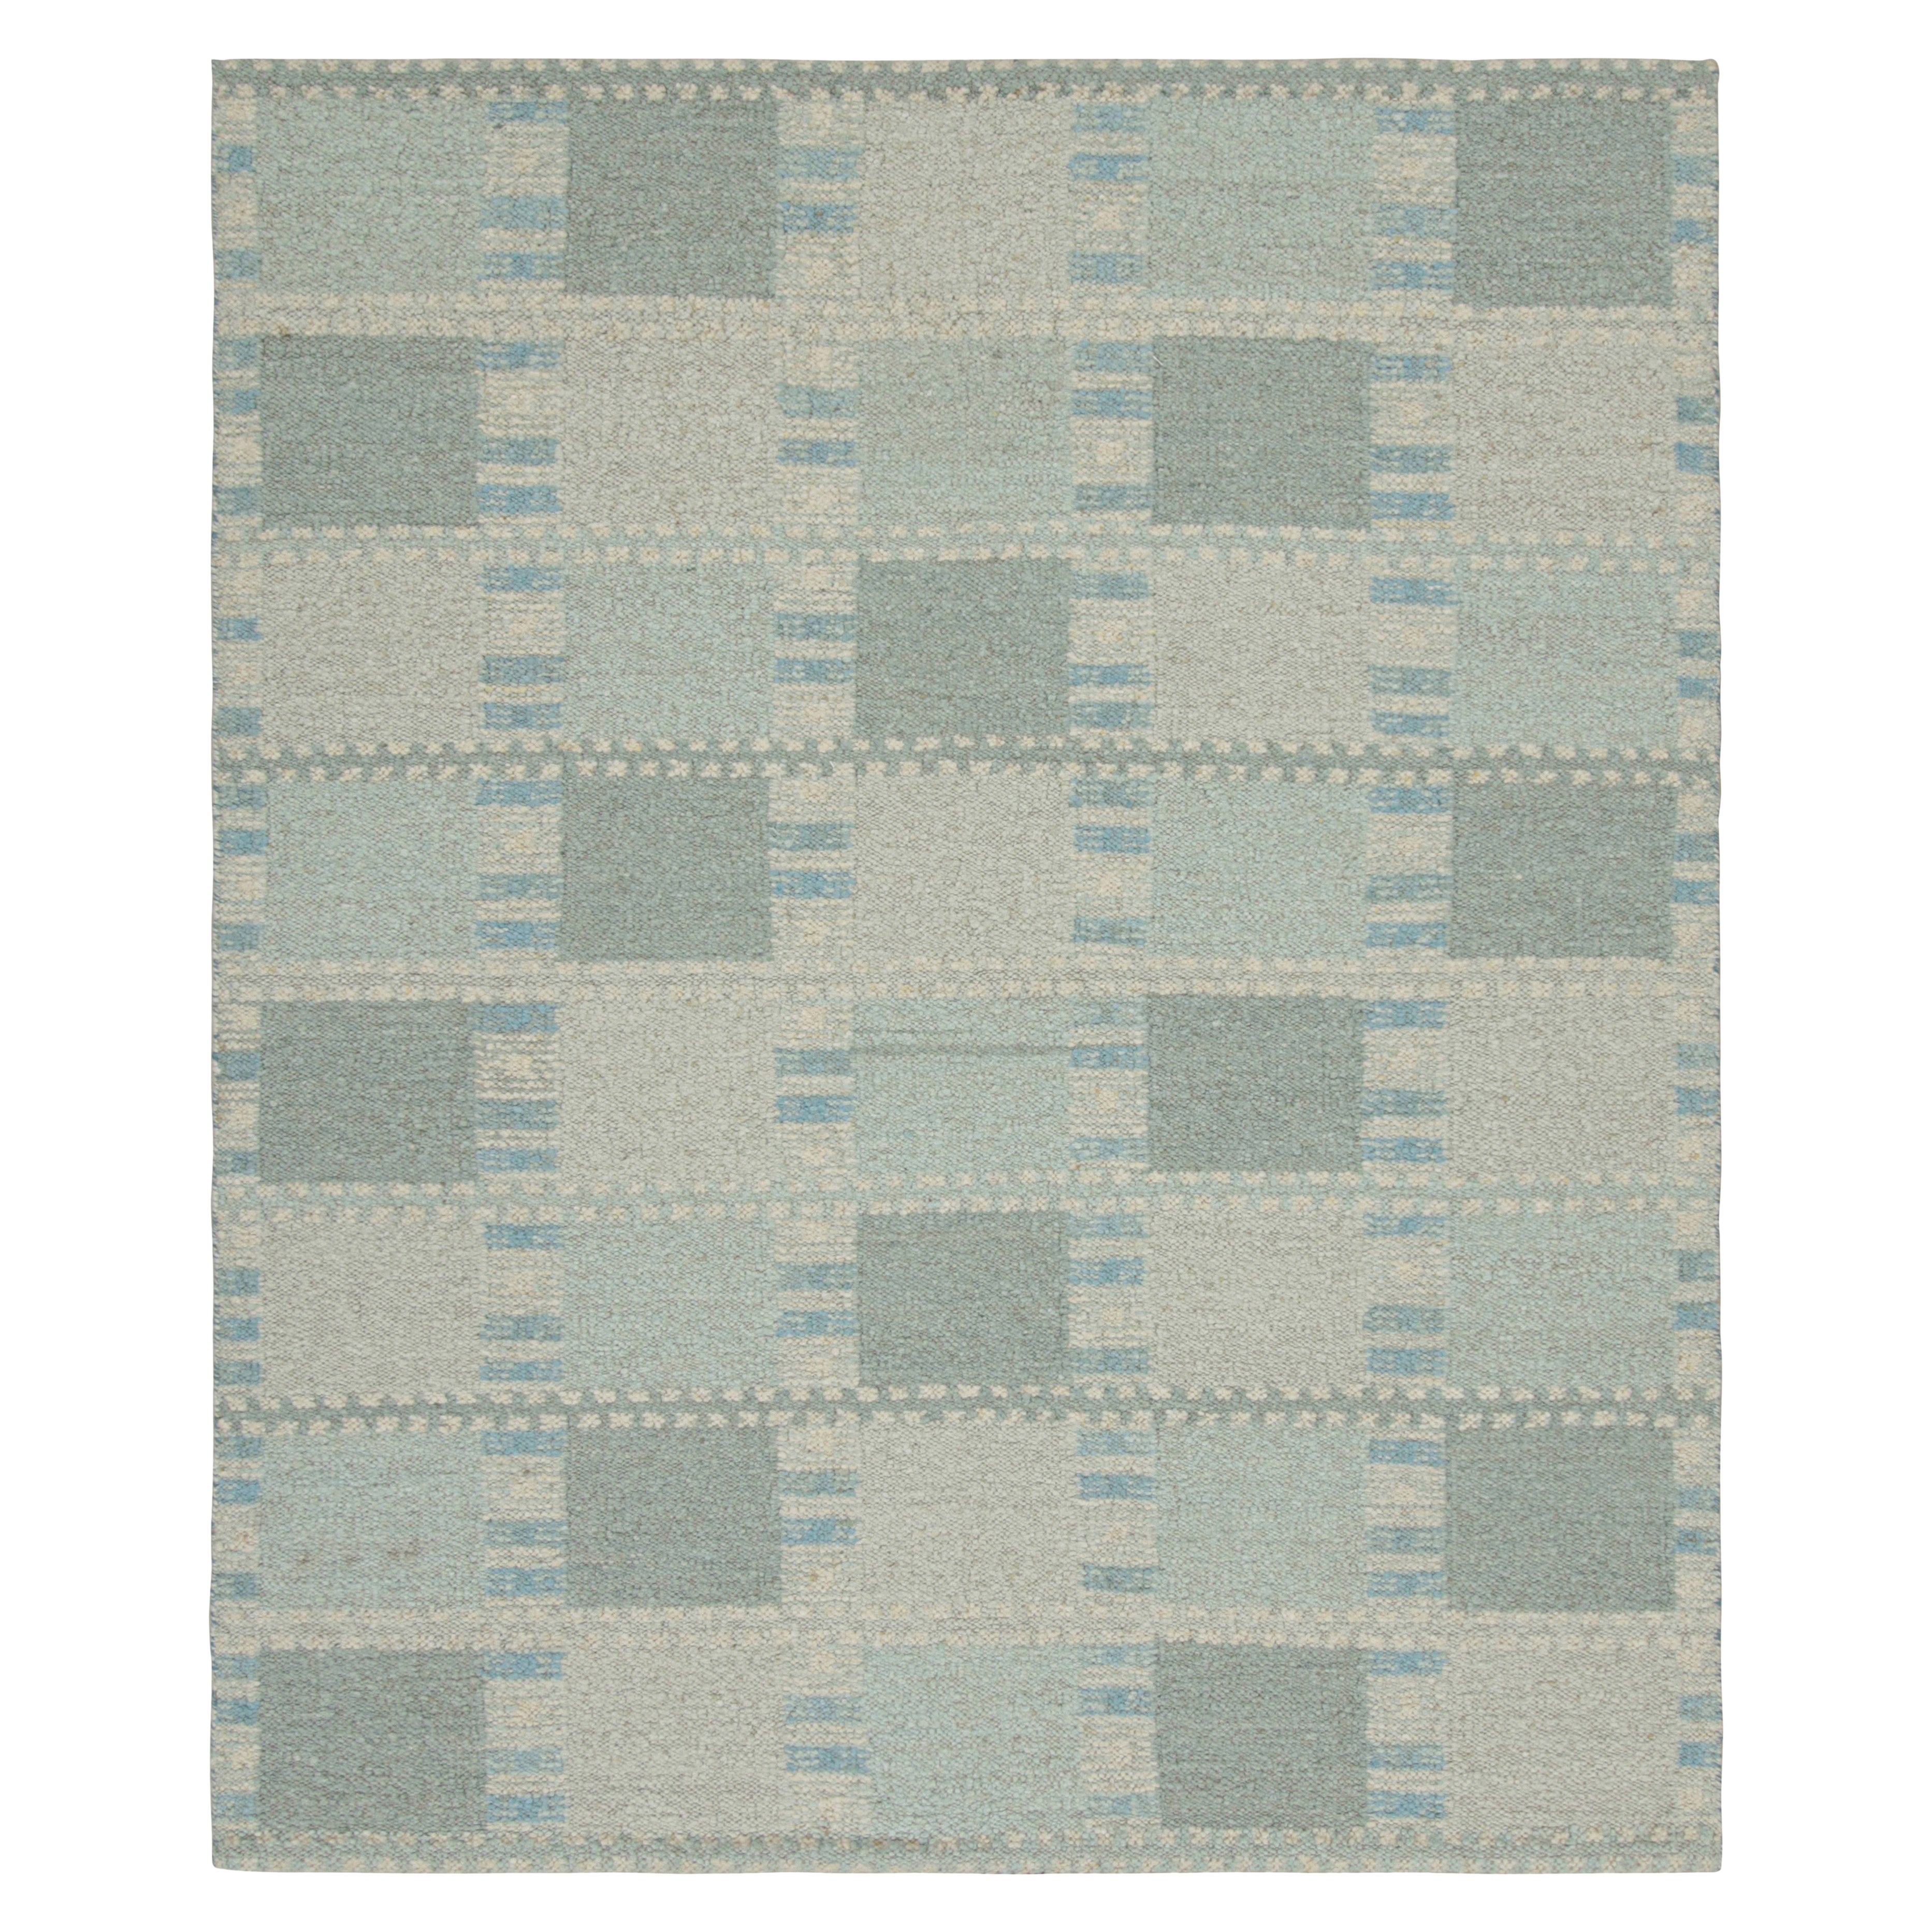 Rug & Kilim's Teppich im skandinavischen Stil mit hellblauen, geometrischen Mustern